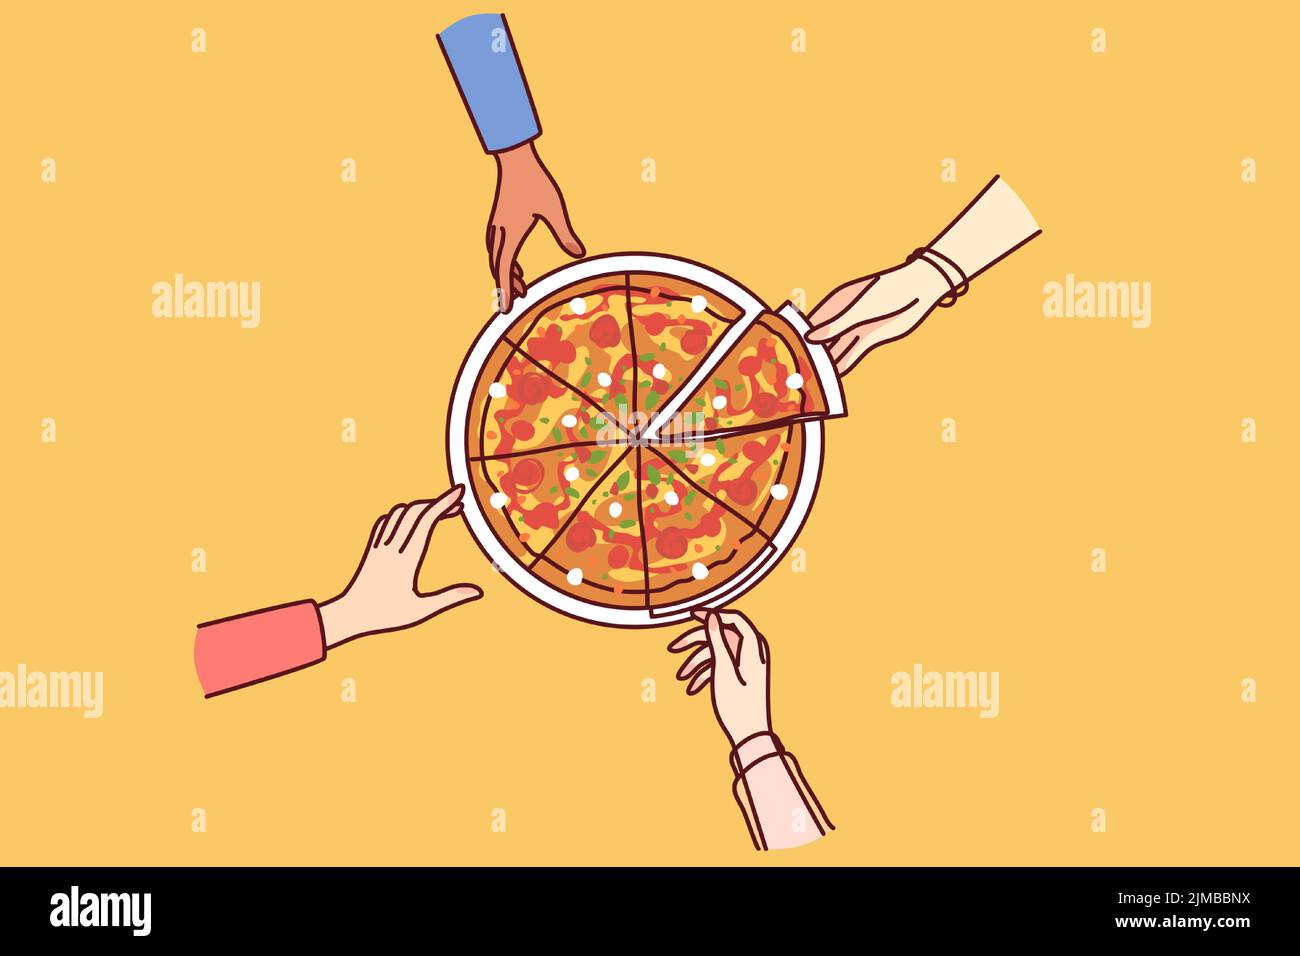 Gros plan sur les personnes qui mangent de la pizza ensemble. Des amis ou des collègues partagent la restauration rapide italienne lors d'une pause-travail au bureau. Illustration vectorielle. Illustration de Vecteur